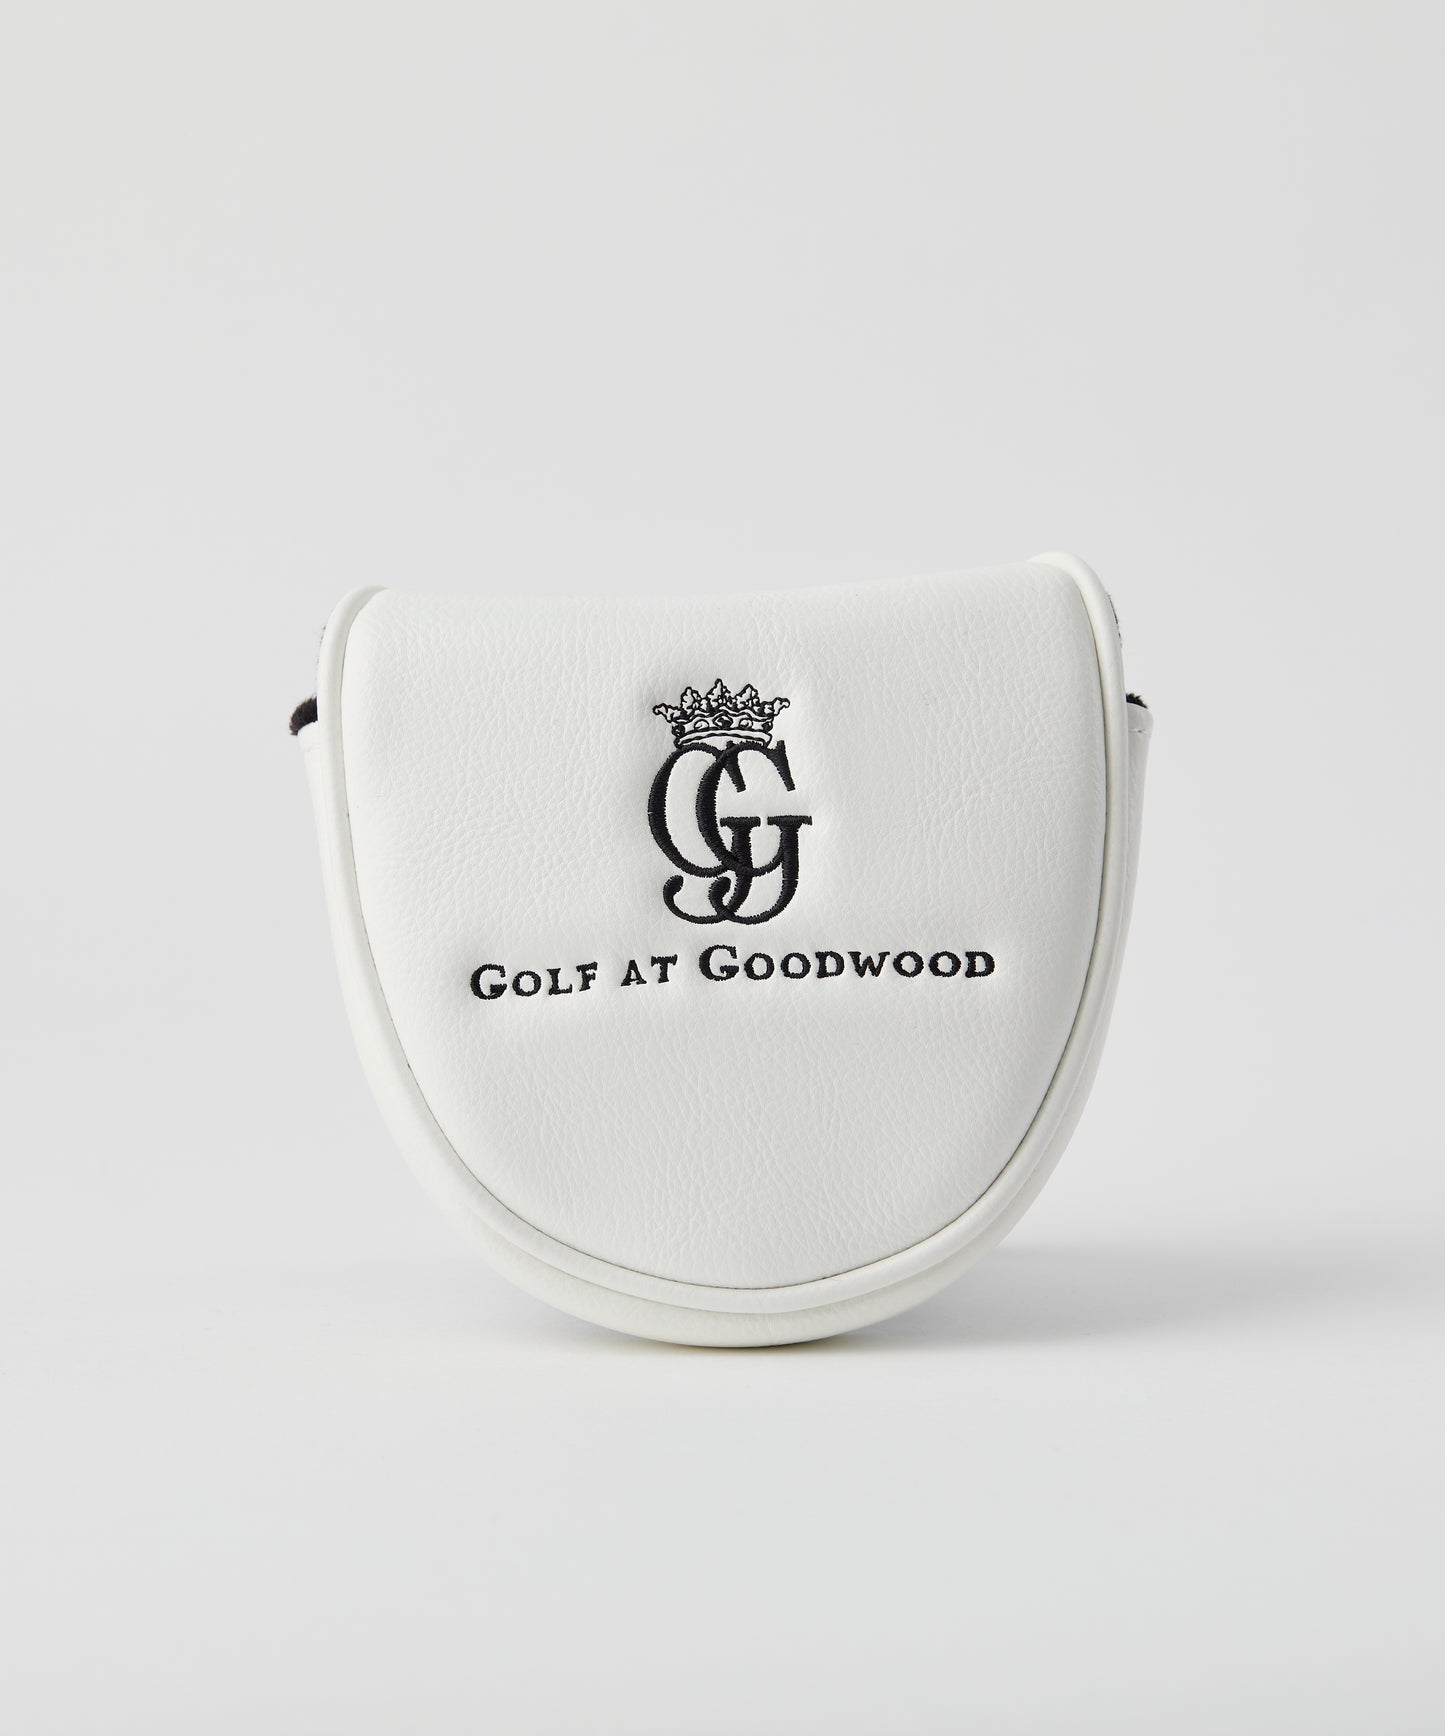 Goodwood Golf Putter Cover - Mallet